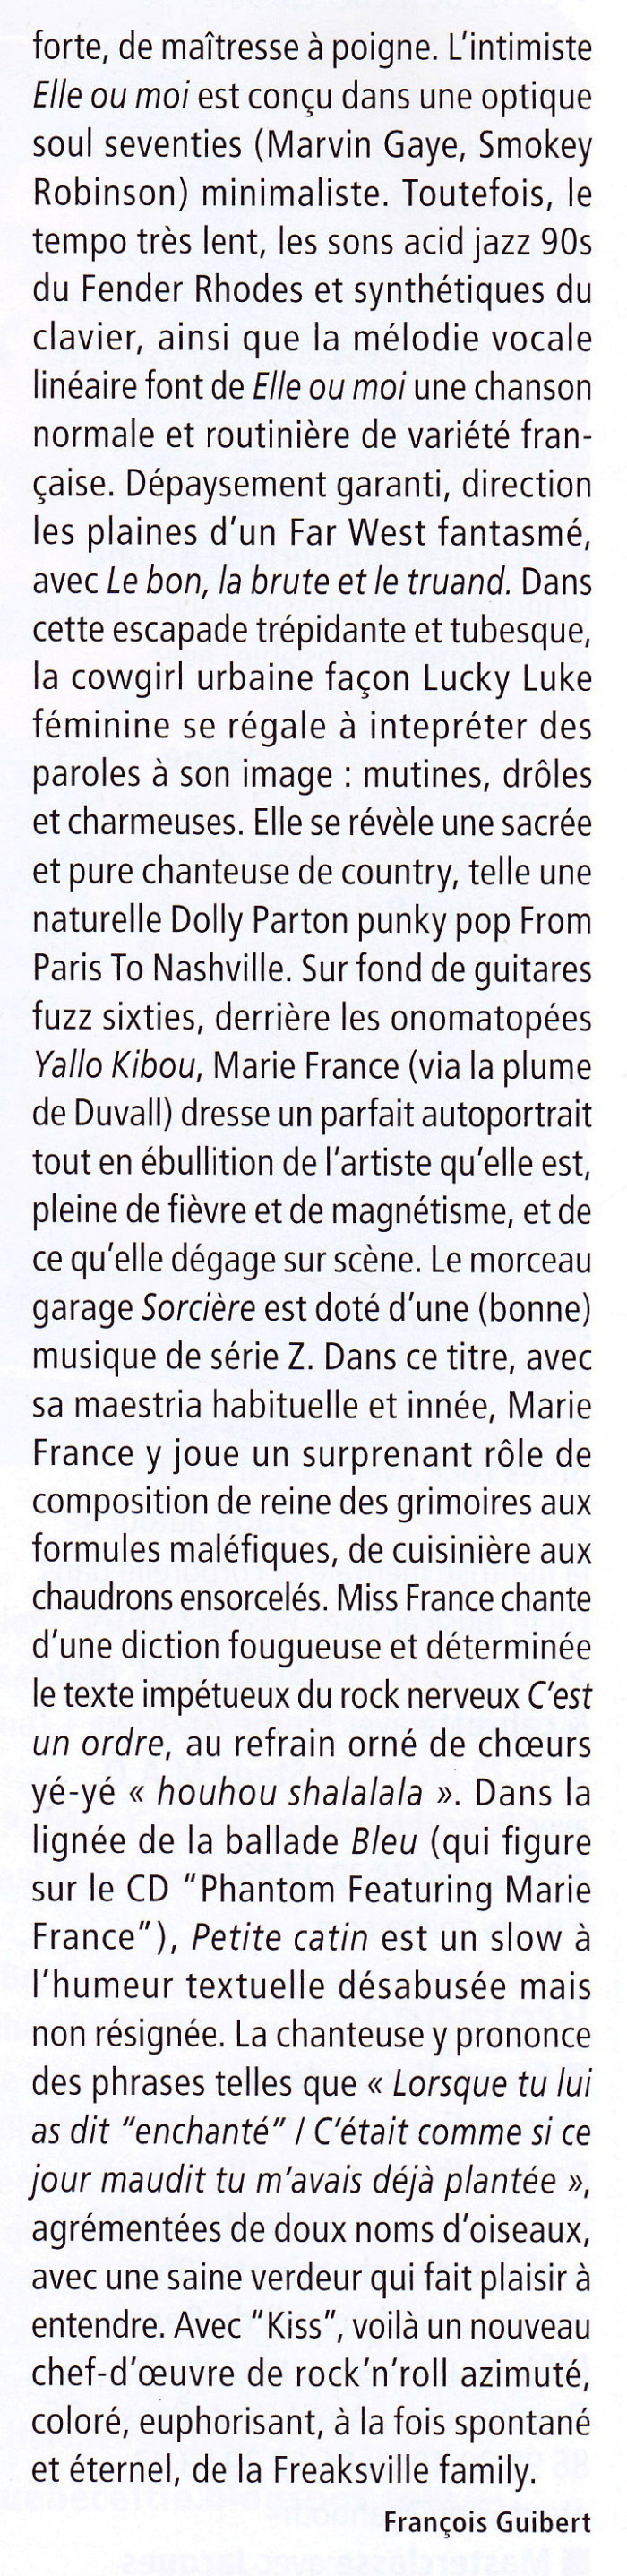 MARIE FRANCE + BENJAMIN SCHOOS & LES EXPERTS EN DESESPOIR interprètent les chansons de JACQUES DUVALL 15/11/2011 TROIS BAUDETS (Paris) : compte rendu 1201250908481423619347296